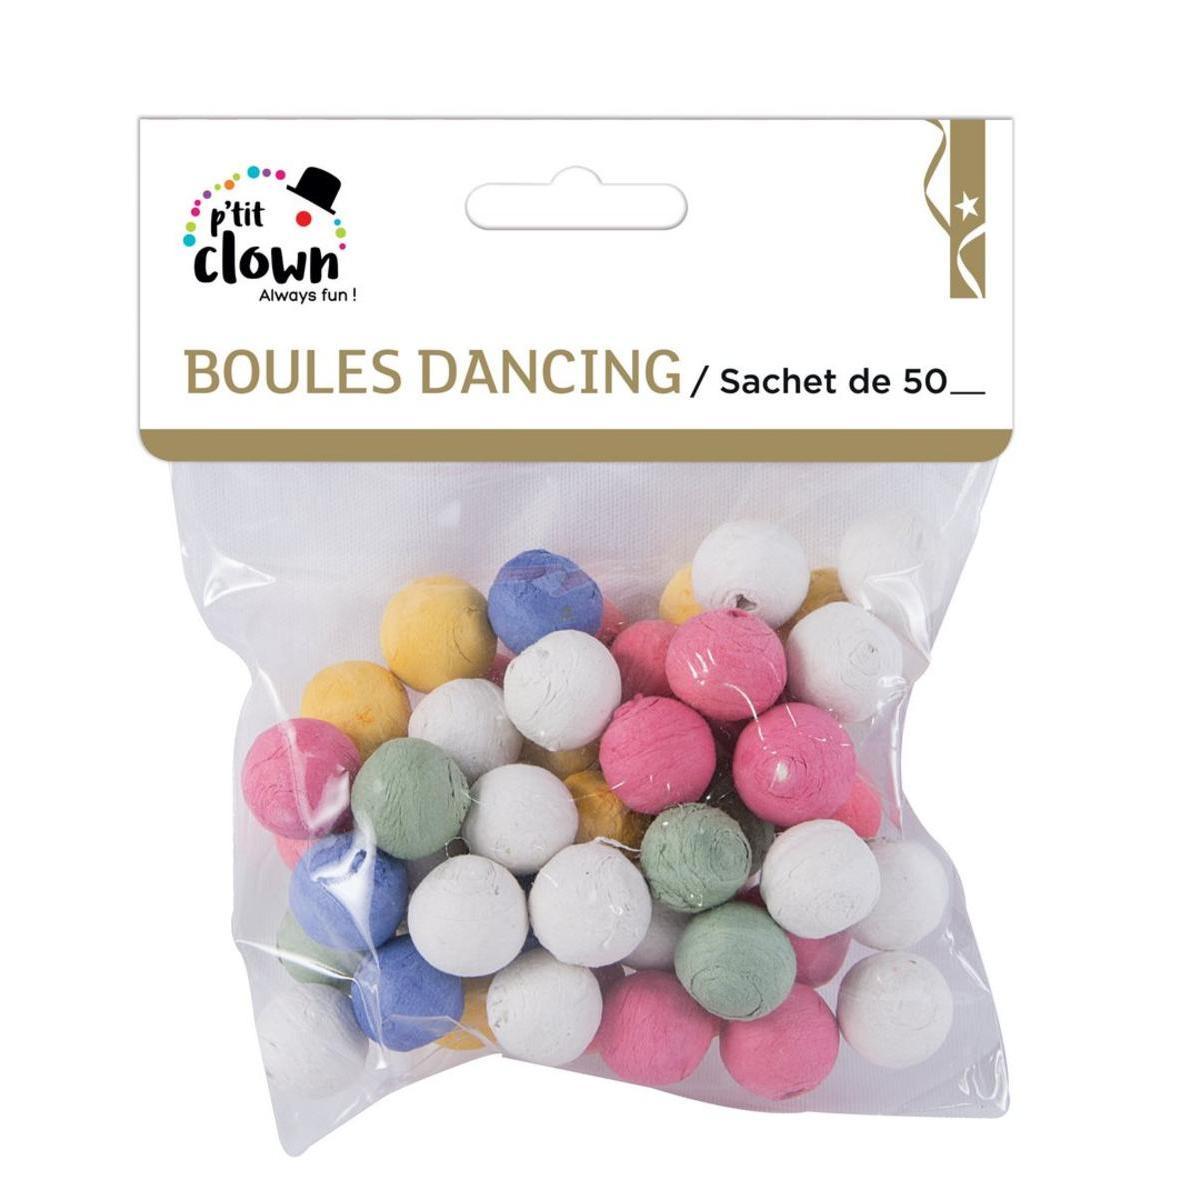 Sachet de 50 boules dancing en papier - 2 x 2 cm - Multicolore